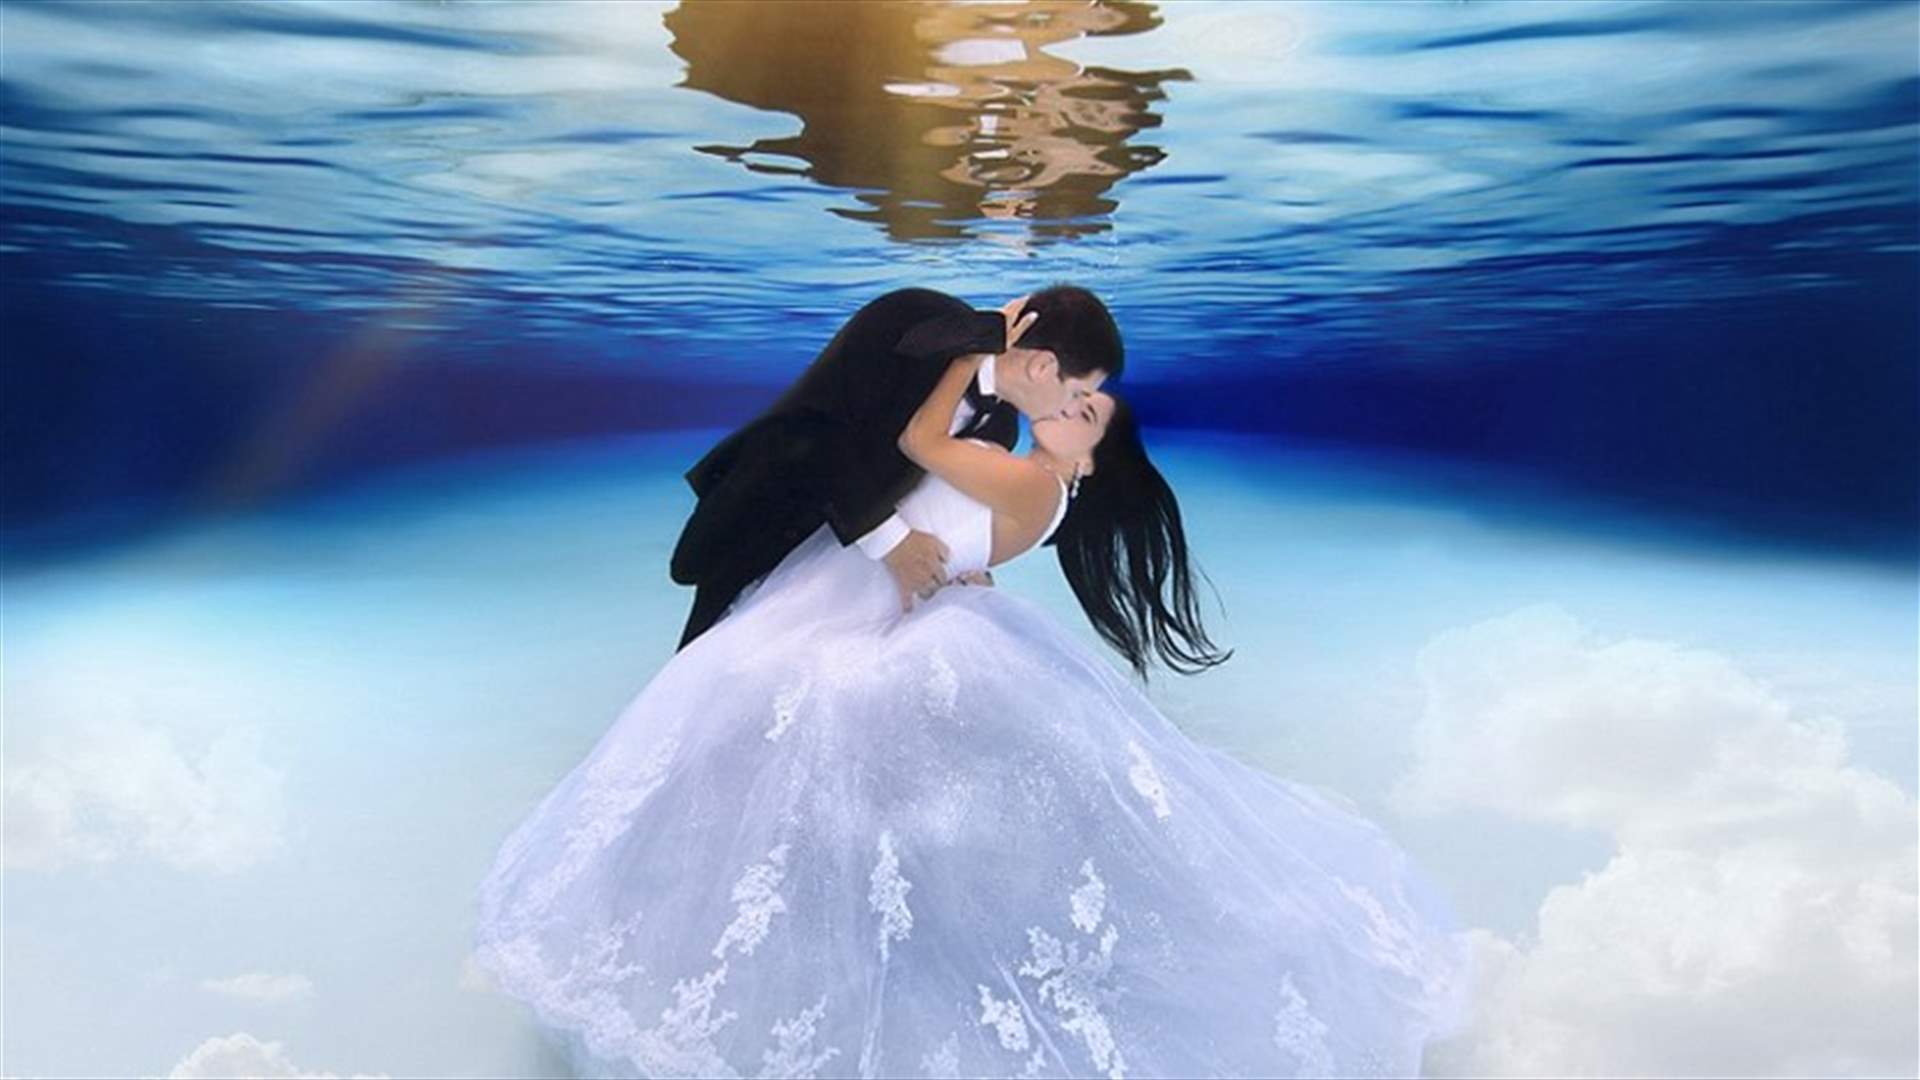 بالصور: جلسات تصويريّة للأزواج تحت الماء تخطف الأنفاس!